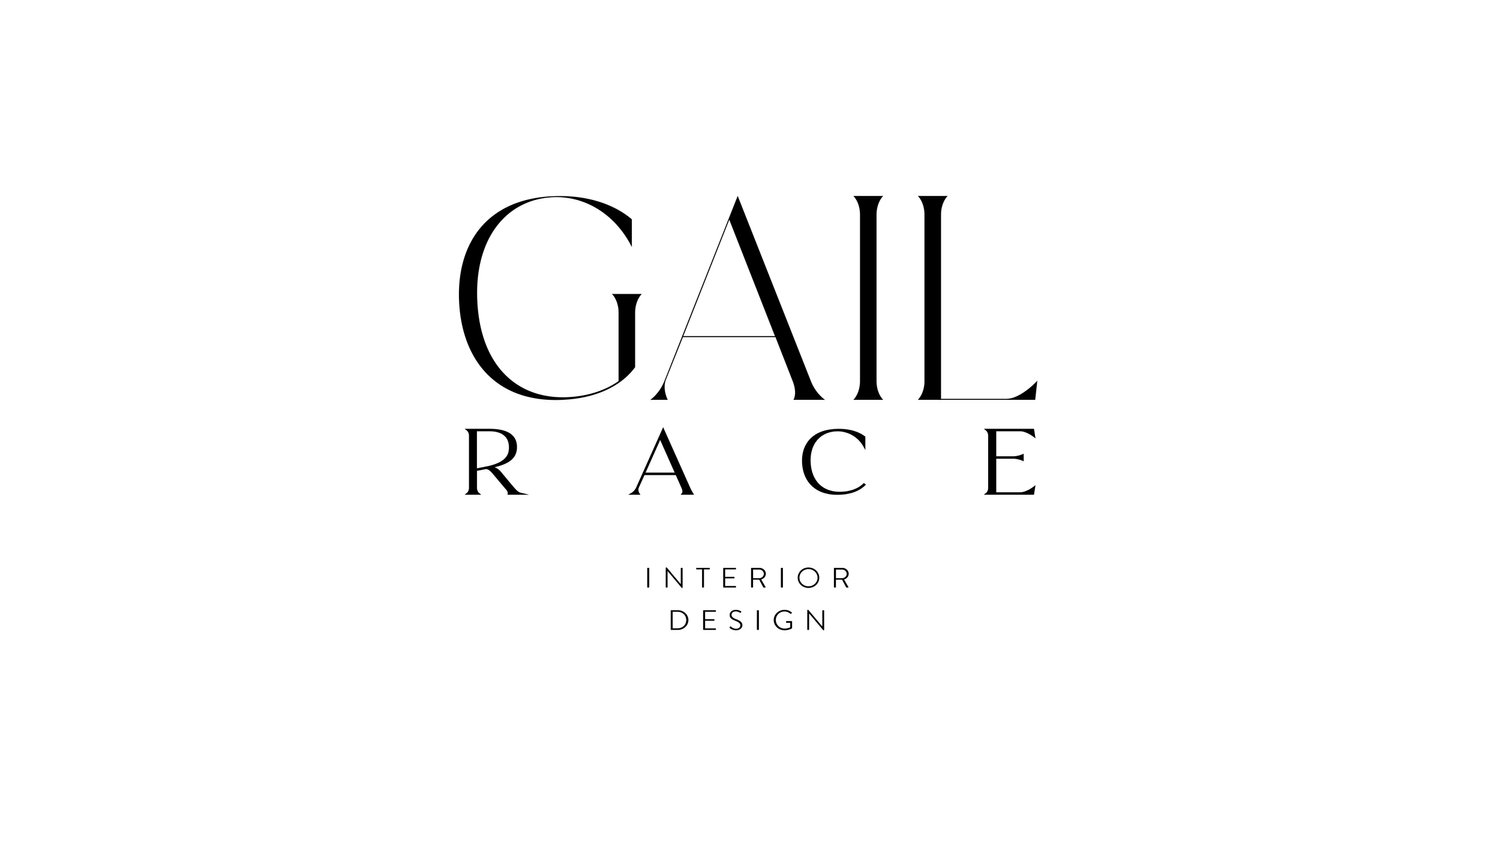 GAIL RACE INTERIOR DESIGN